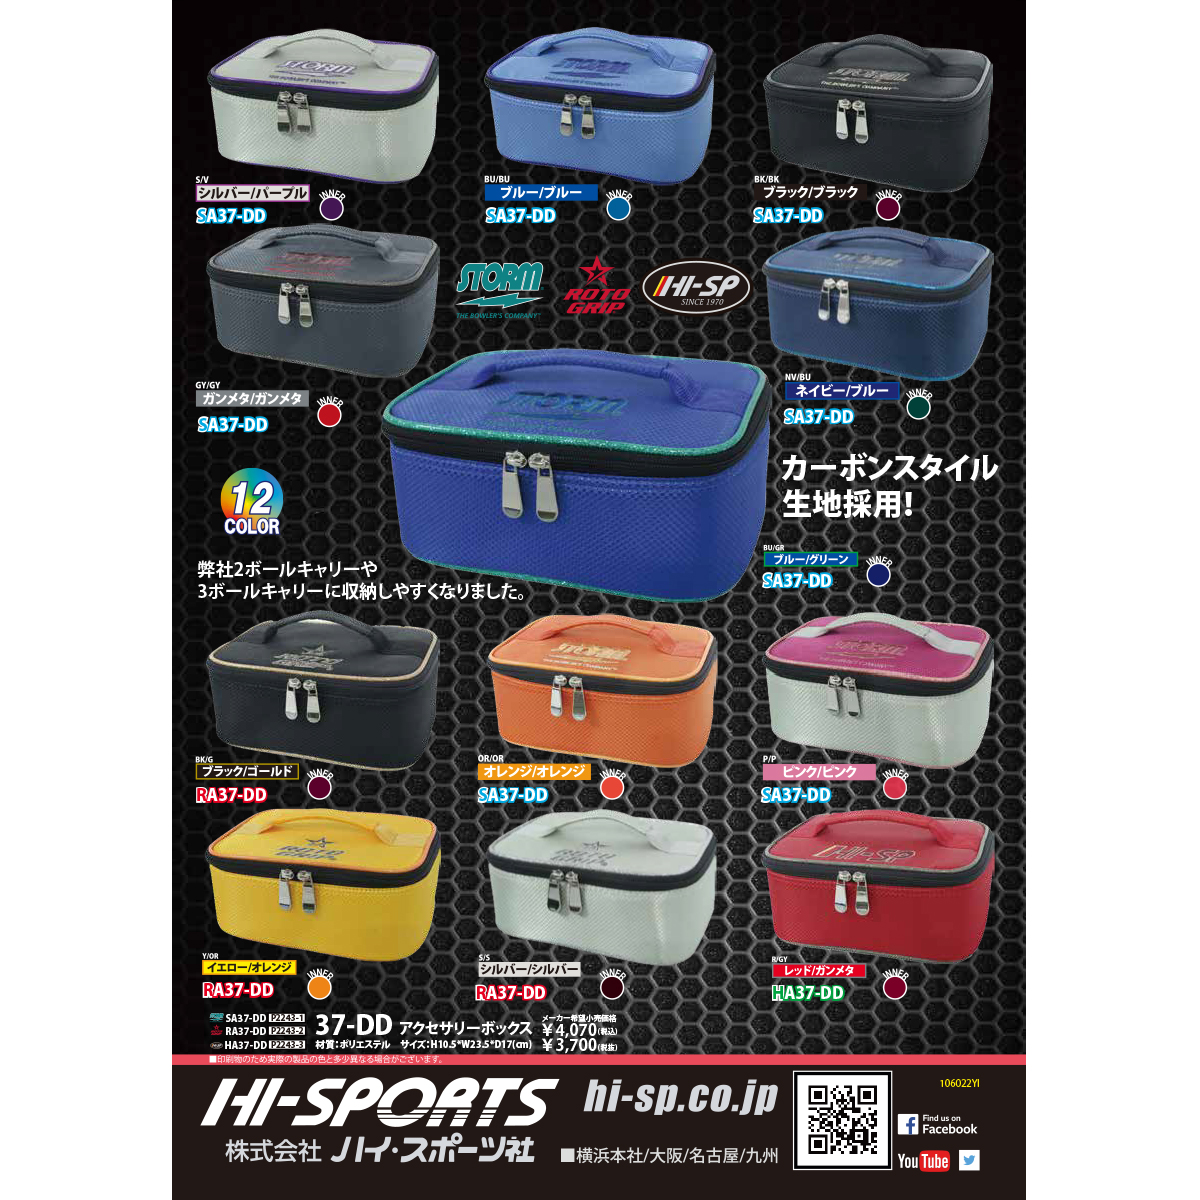 ハイスポーツ アクセサリーボックス(HA37-DD)(予約受付中)